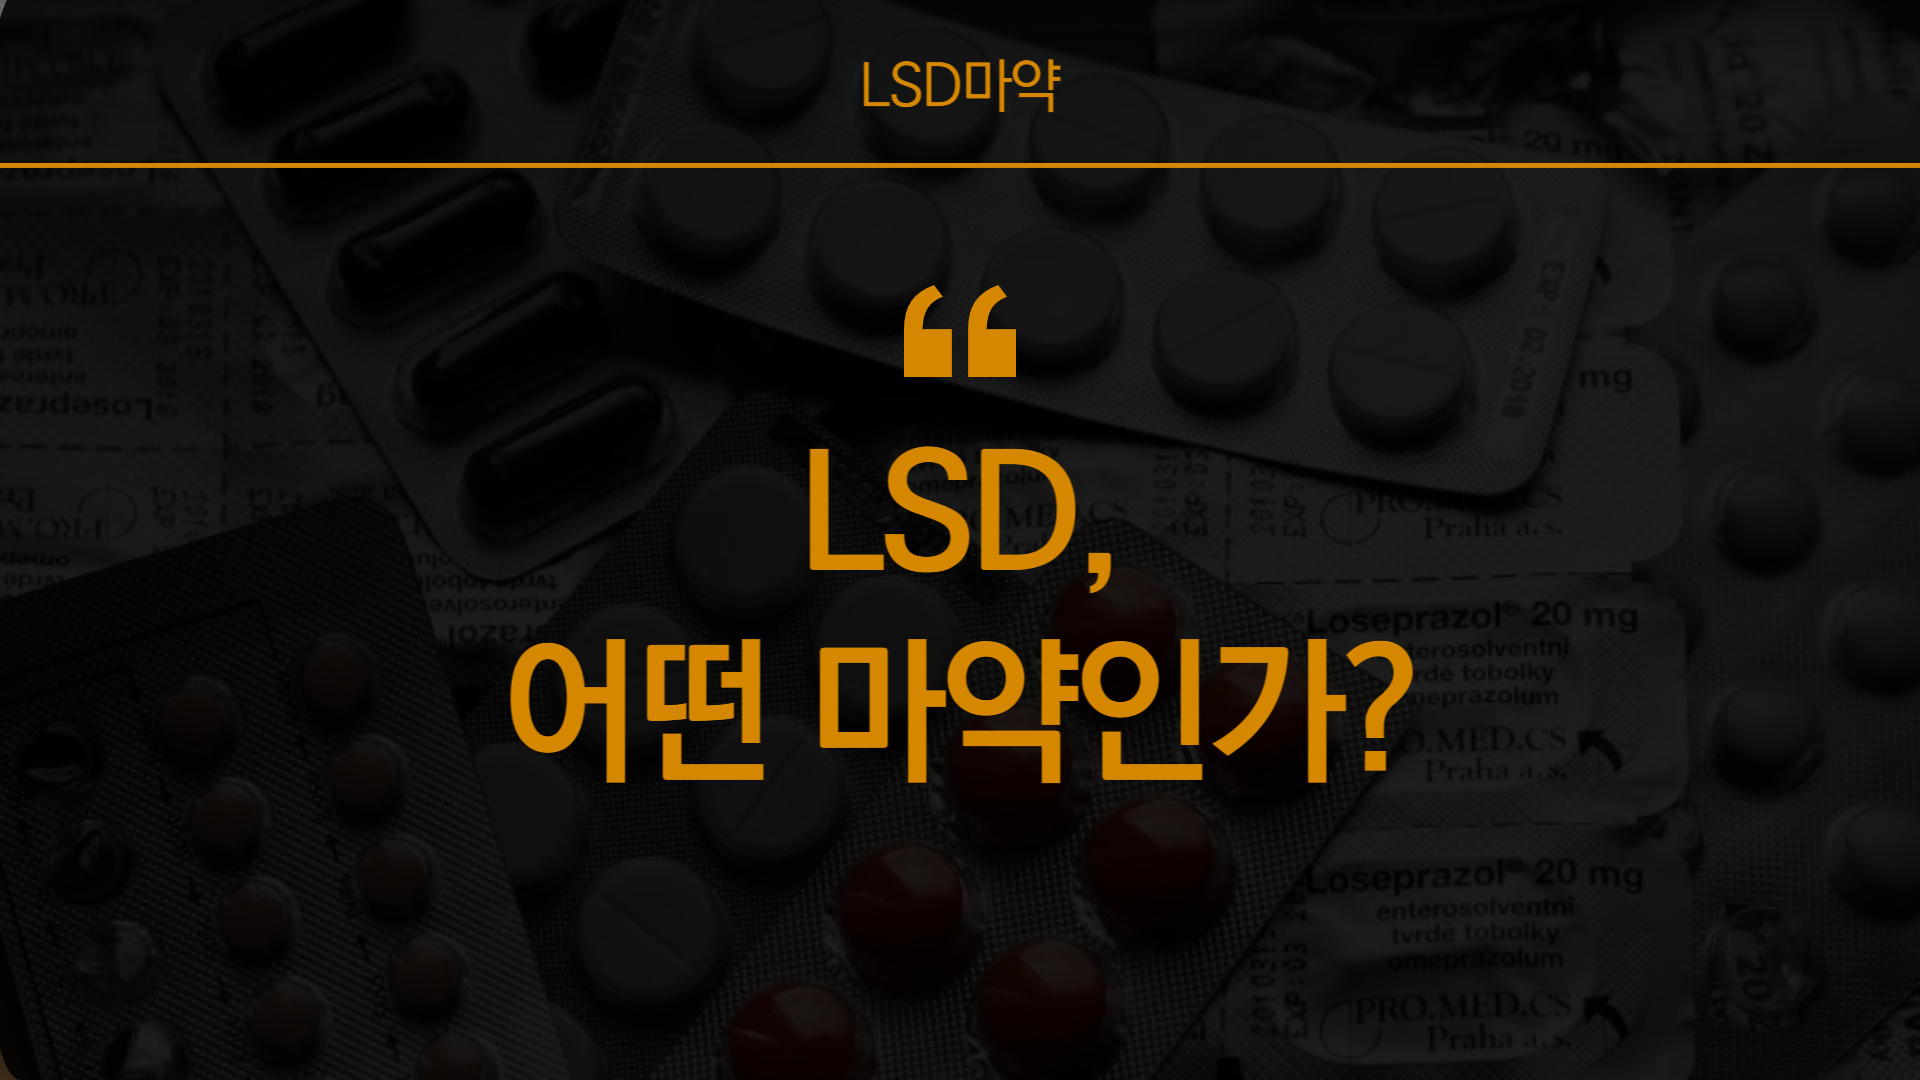 LSD의 뜻